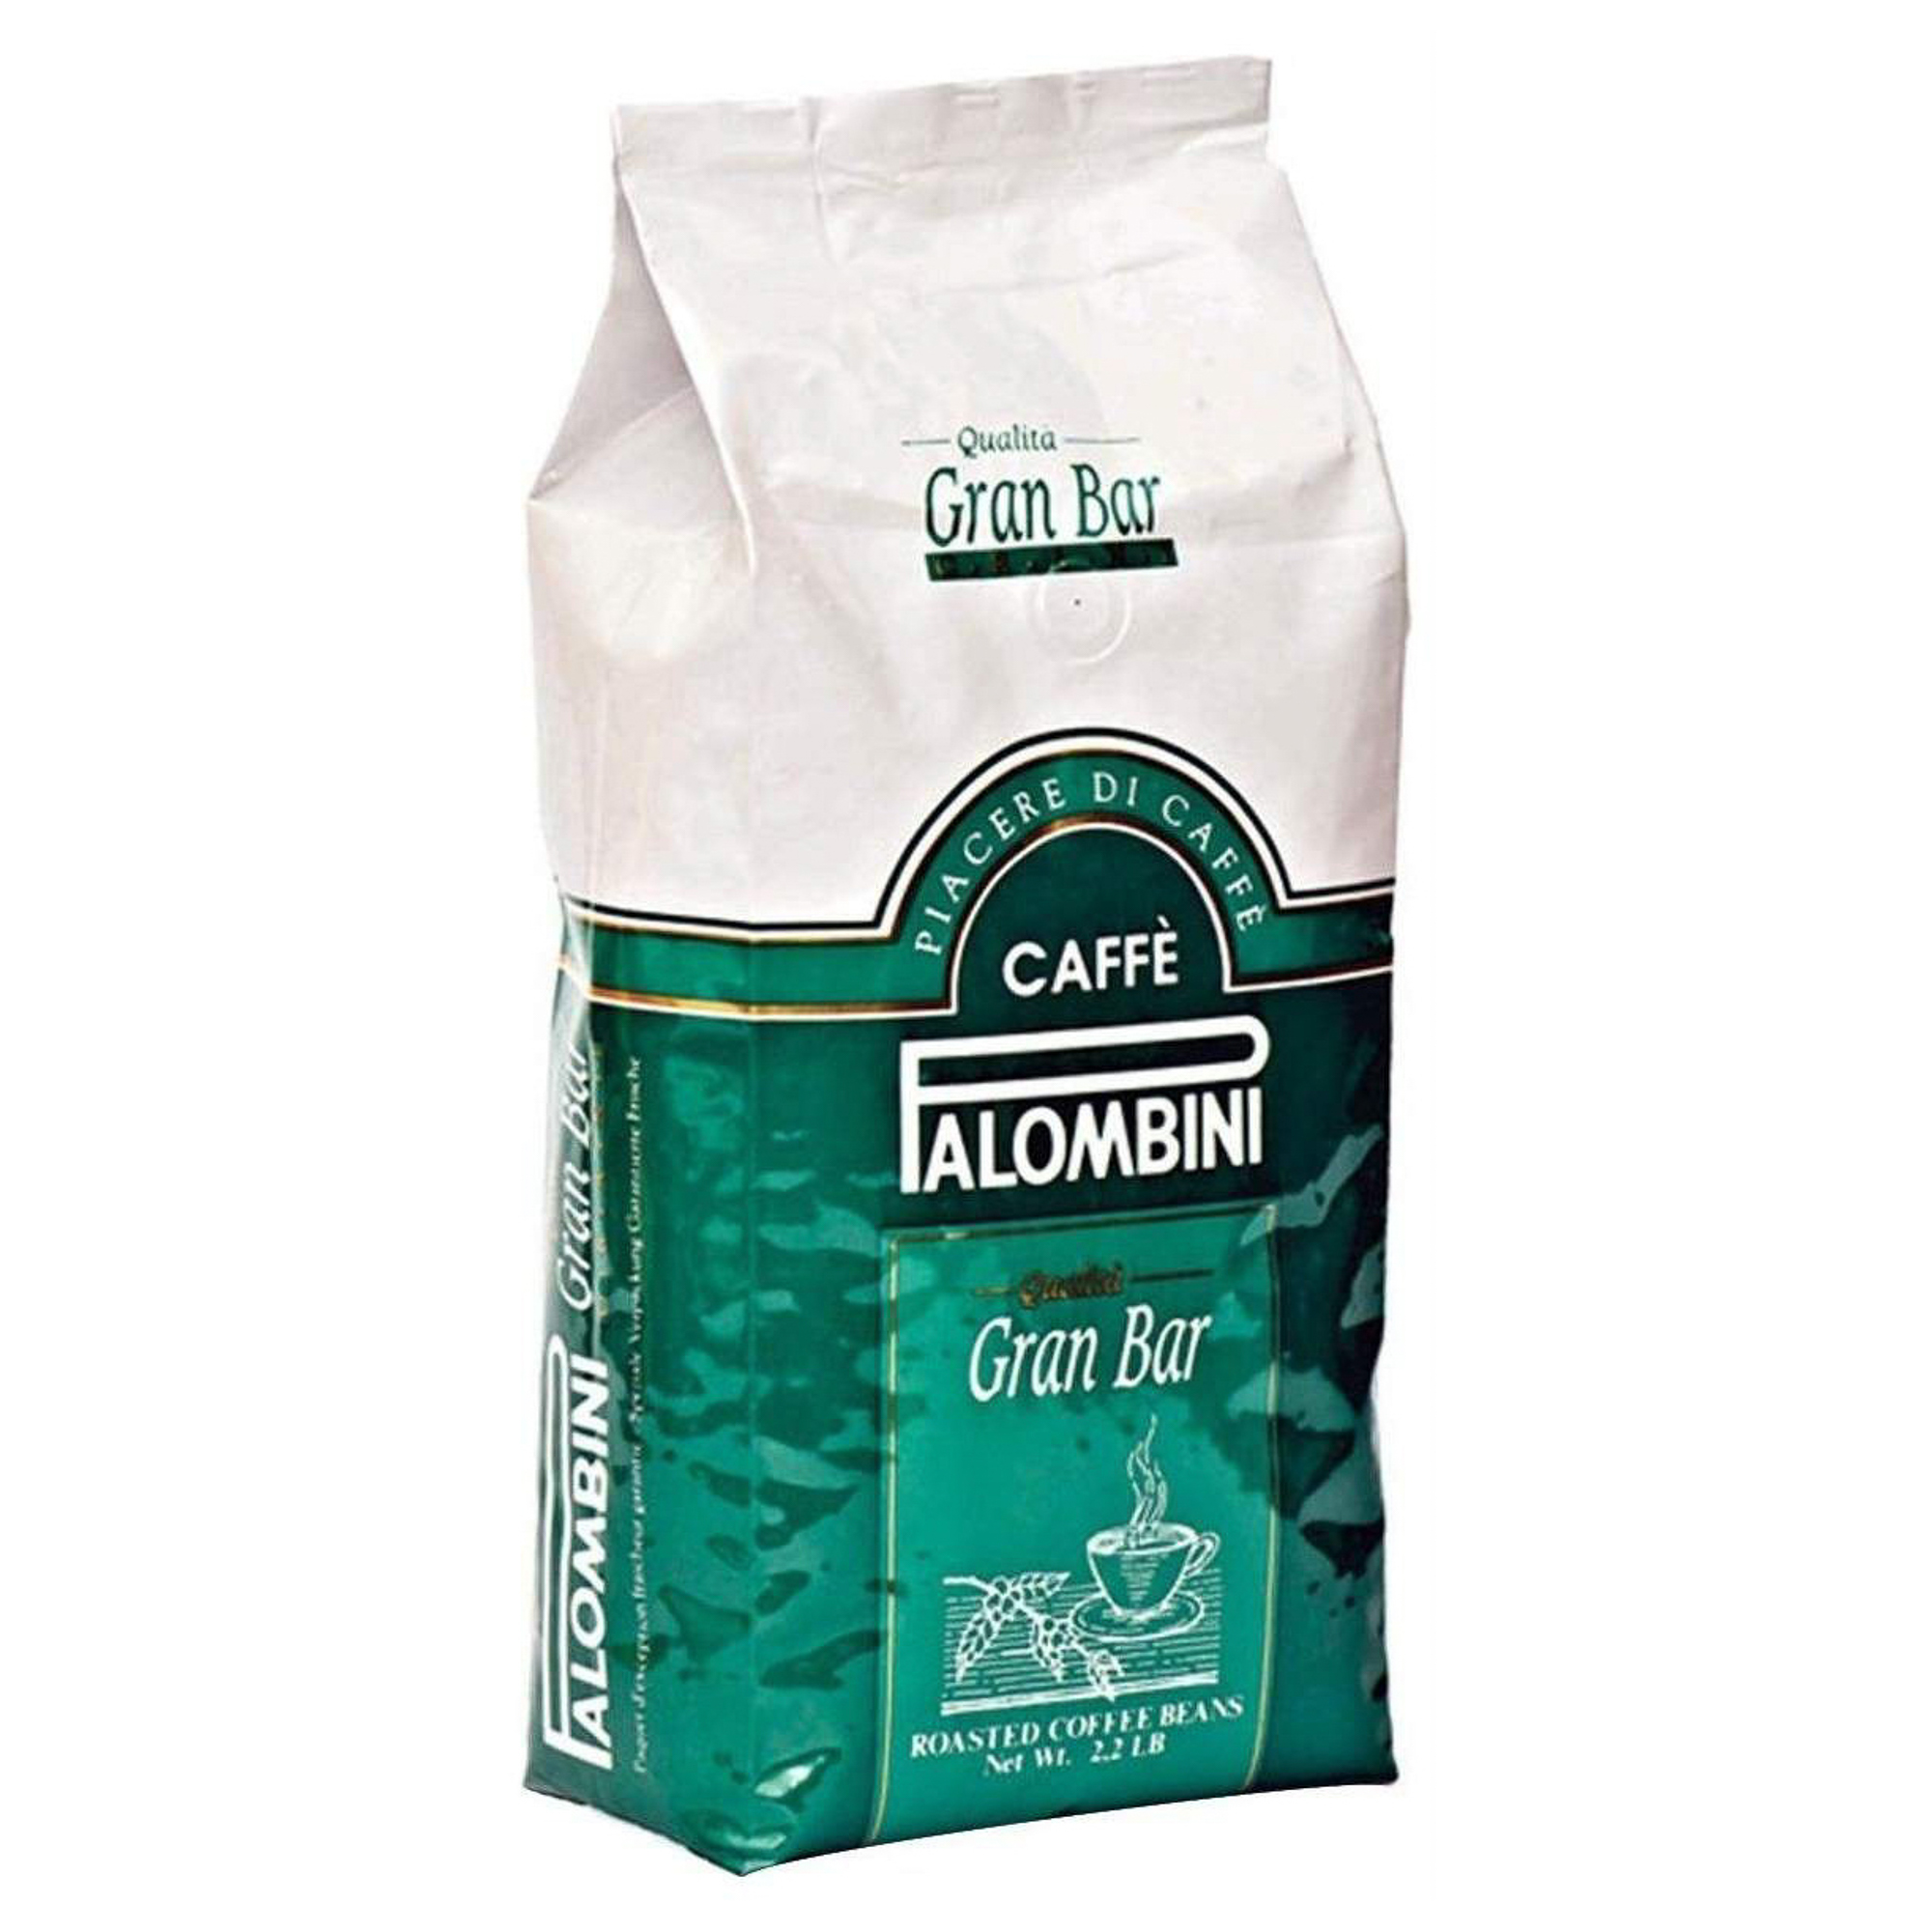 Кофе в зернах Palombini Gran Bar 1 кг кофе brai gran 100% арабика зерно в у 1 кг